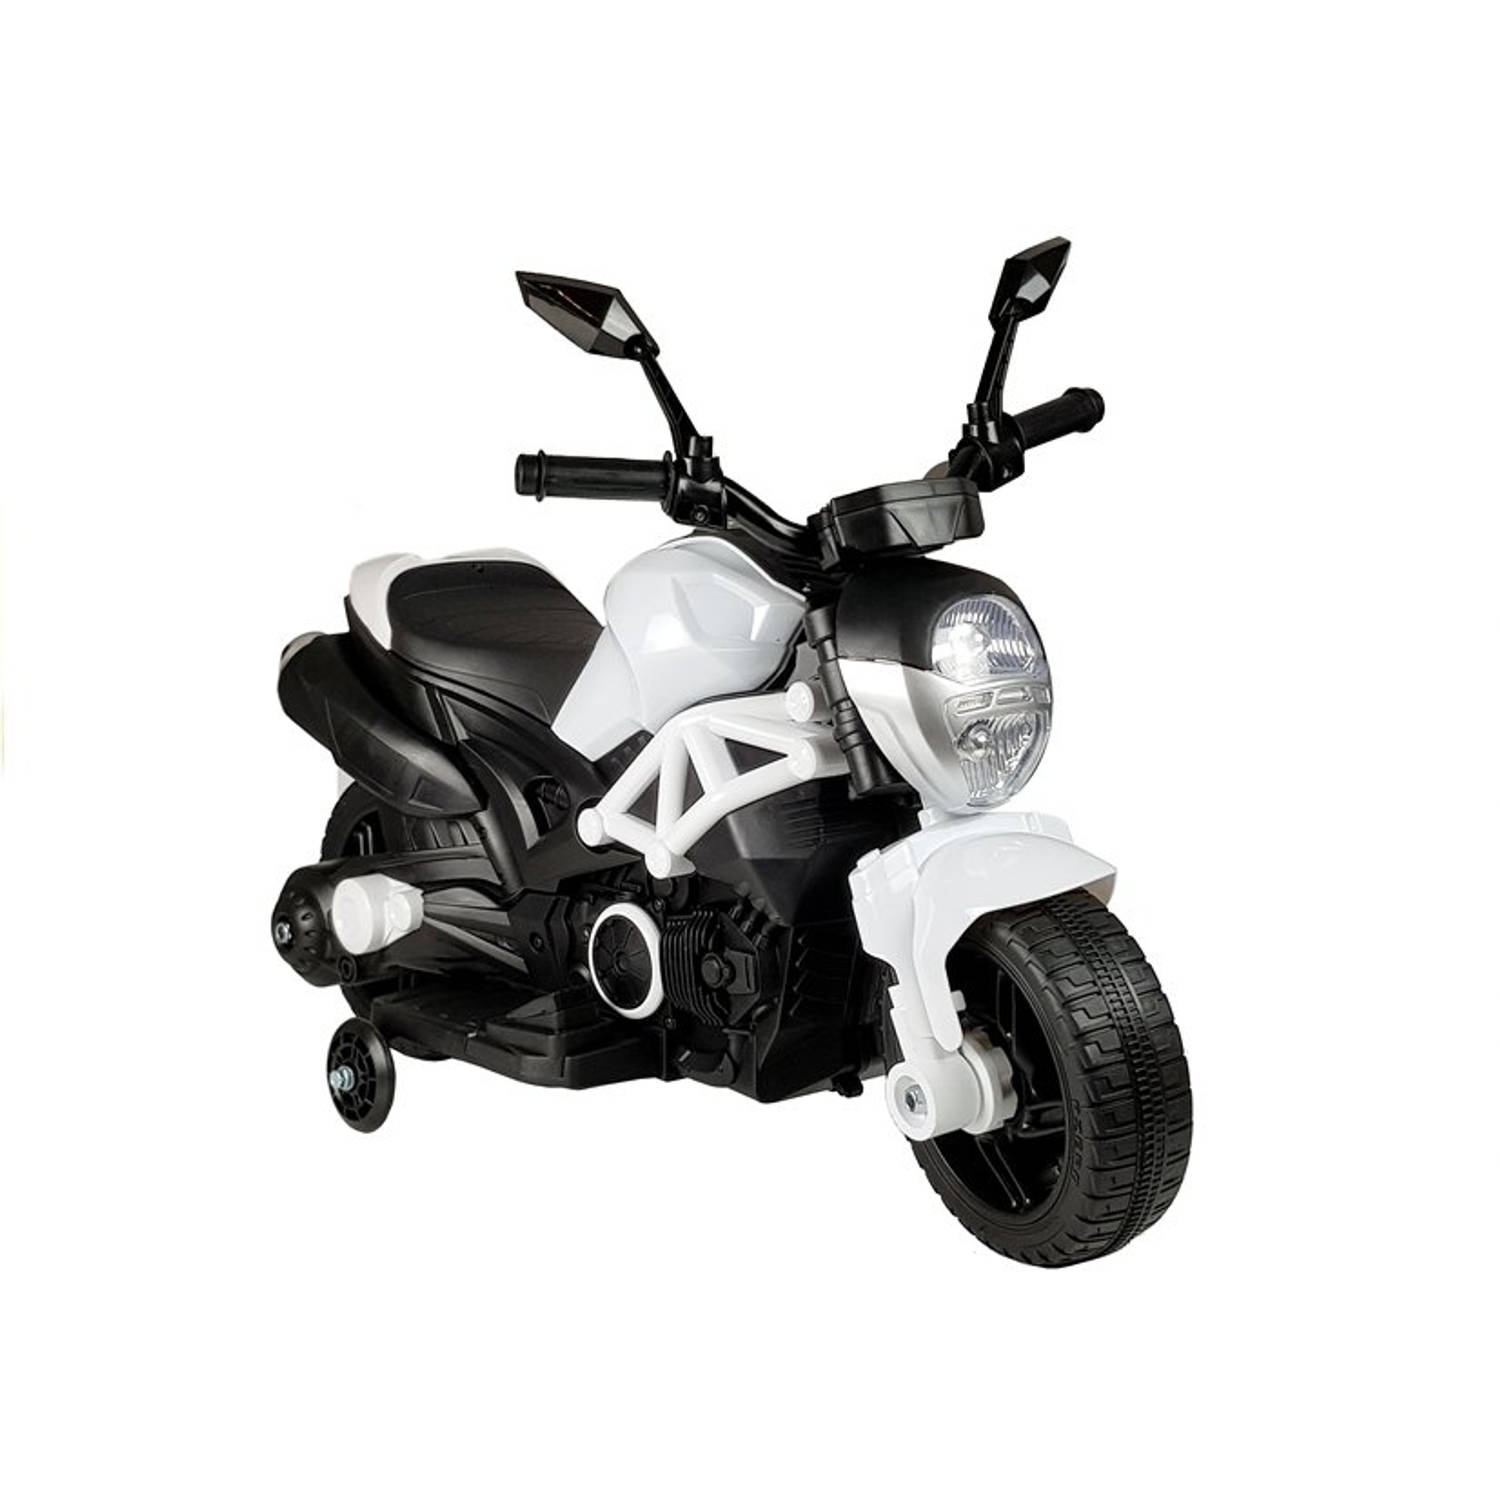 Elektrische naked bike - kindermotor - motor voor kinderen - tot 25kg max 1-3 km/h wit - kids accu motor